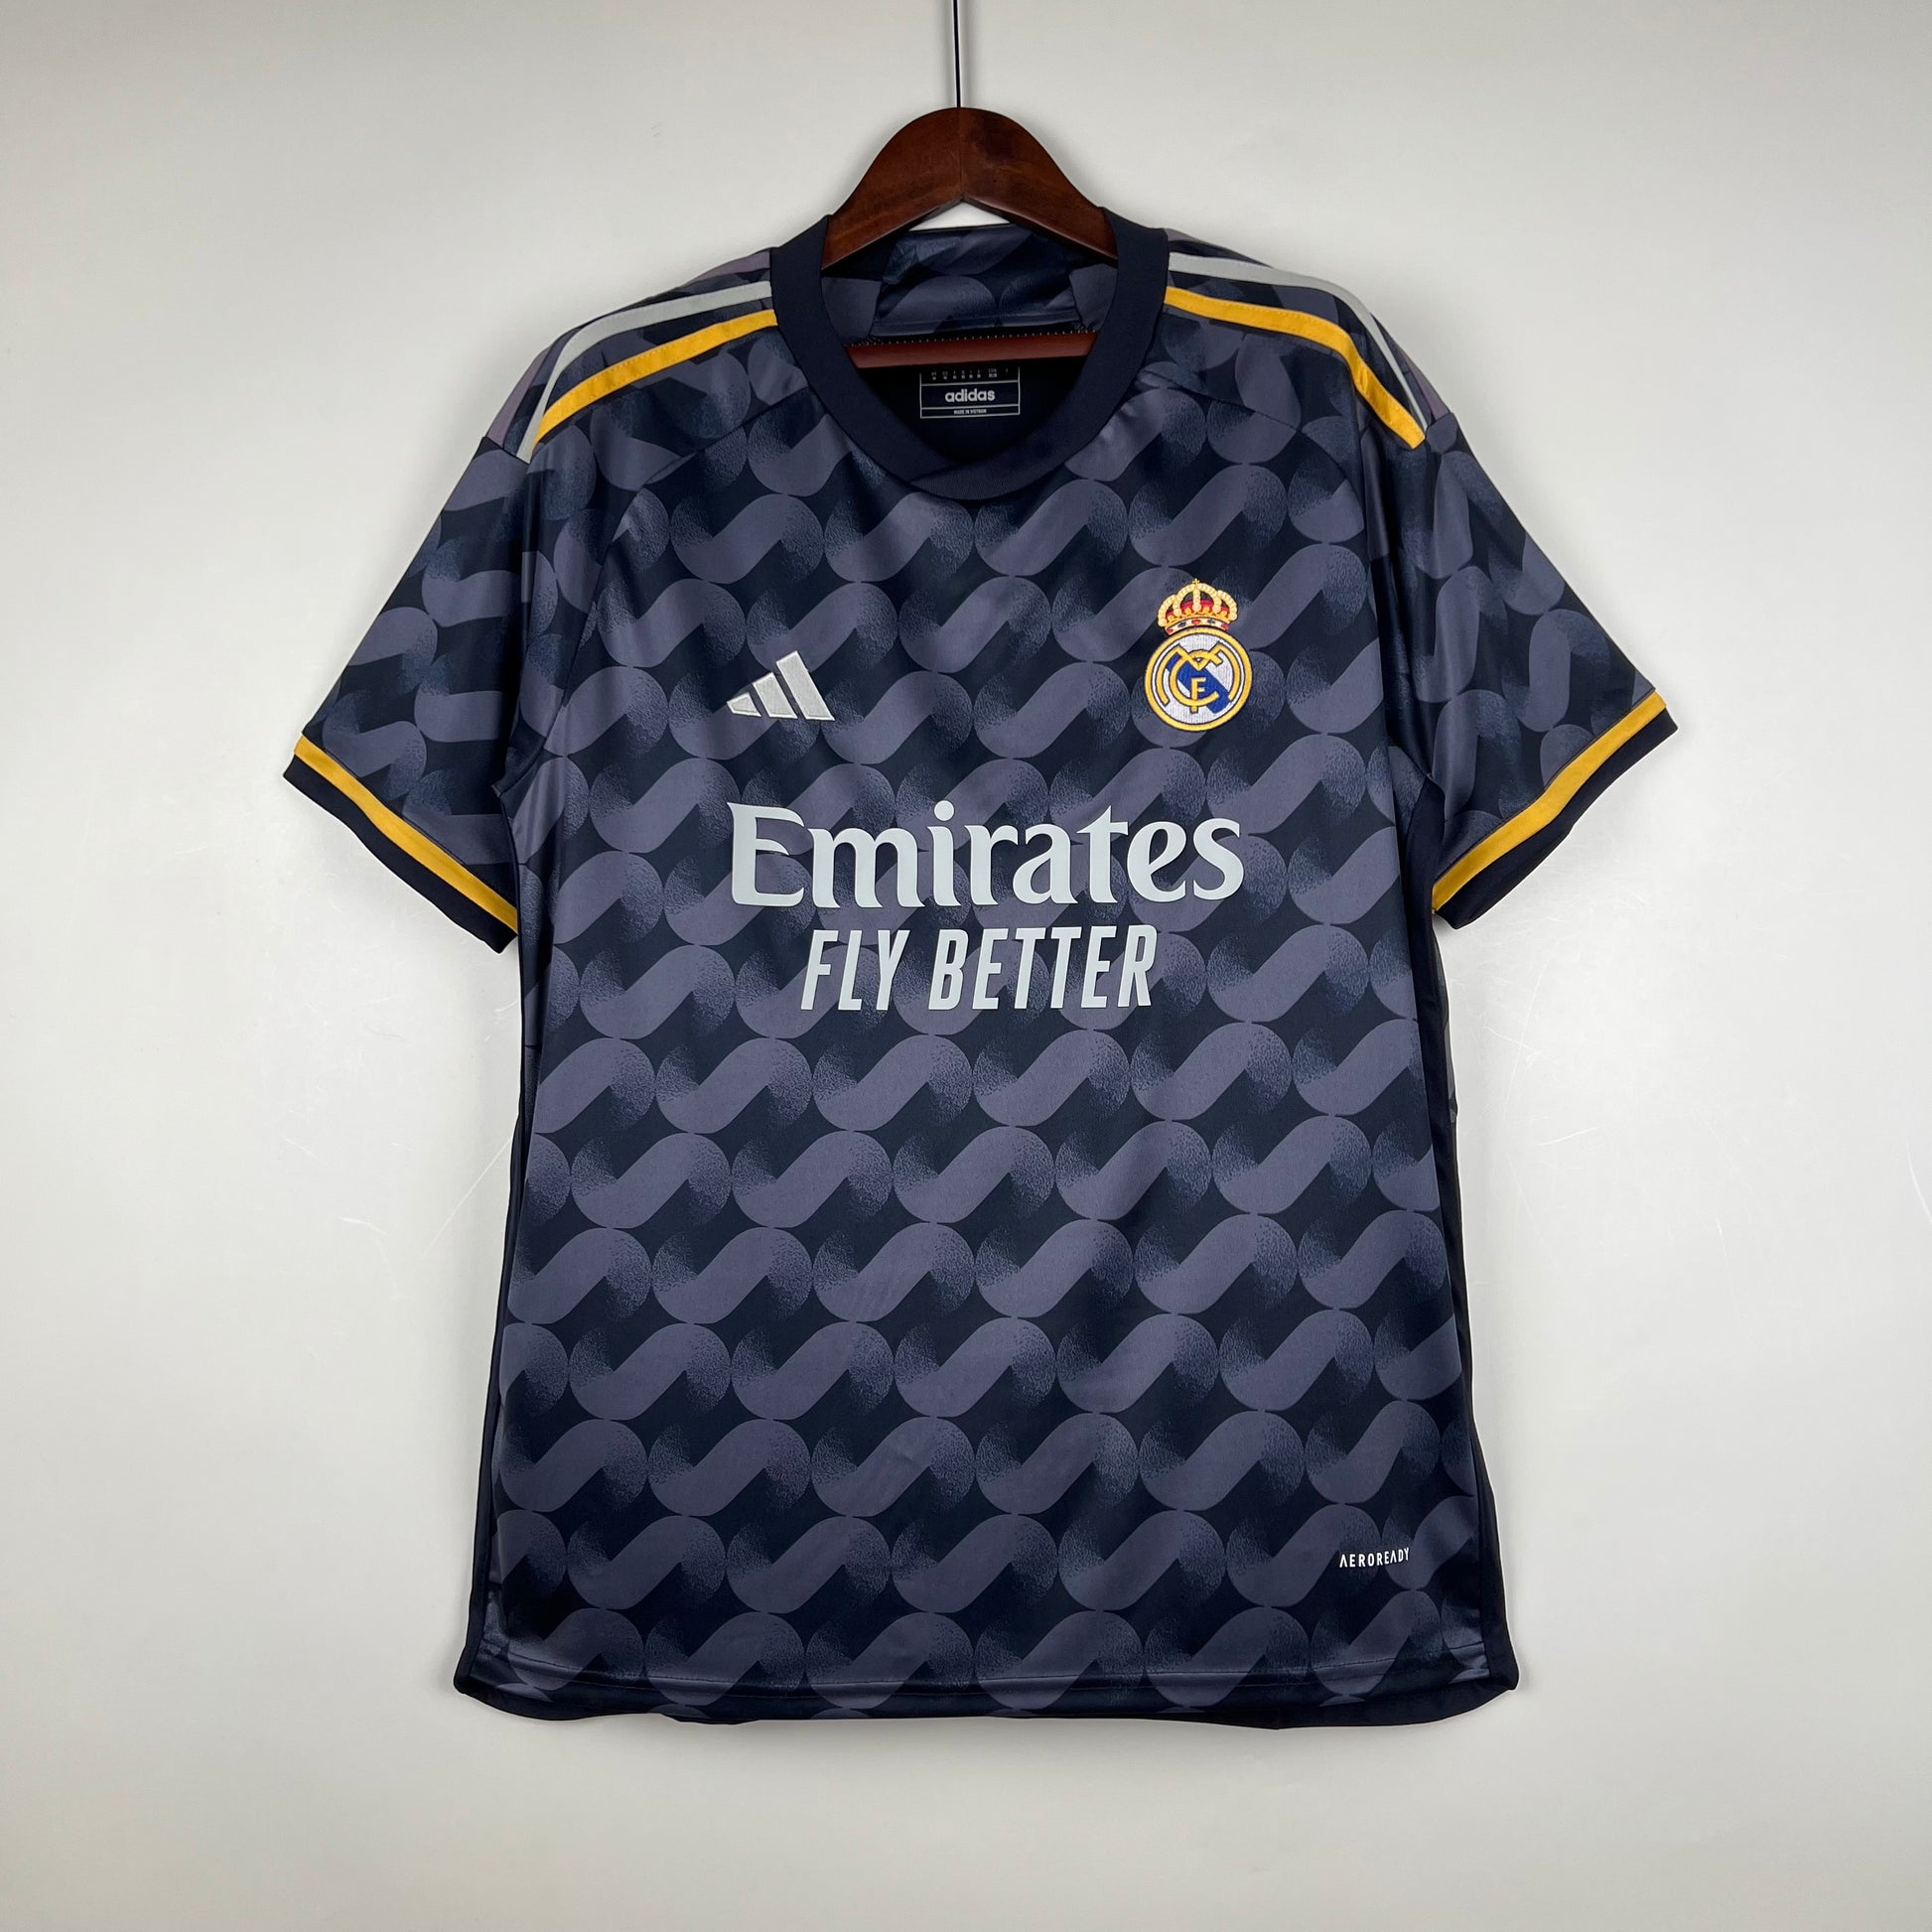 Real Madrid Away Kit 2022 Player Version Price in Bangladesh